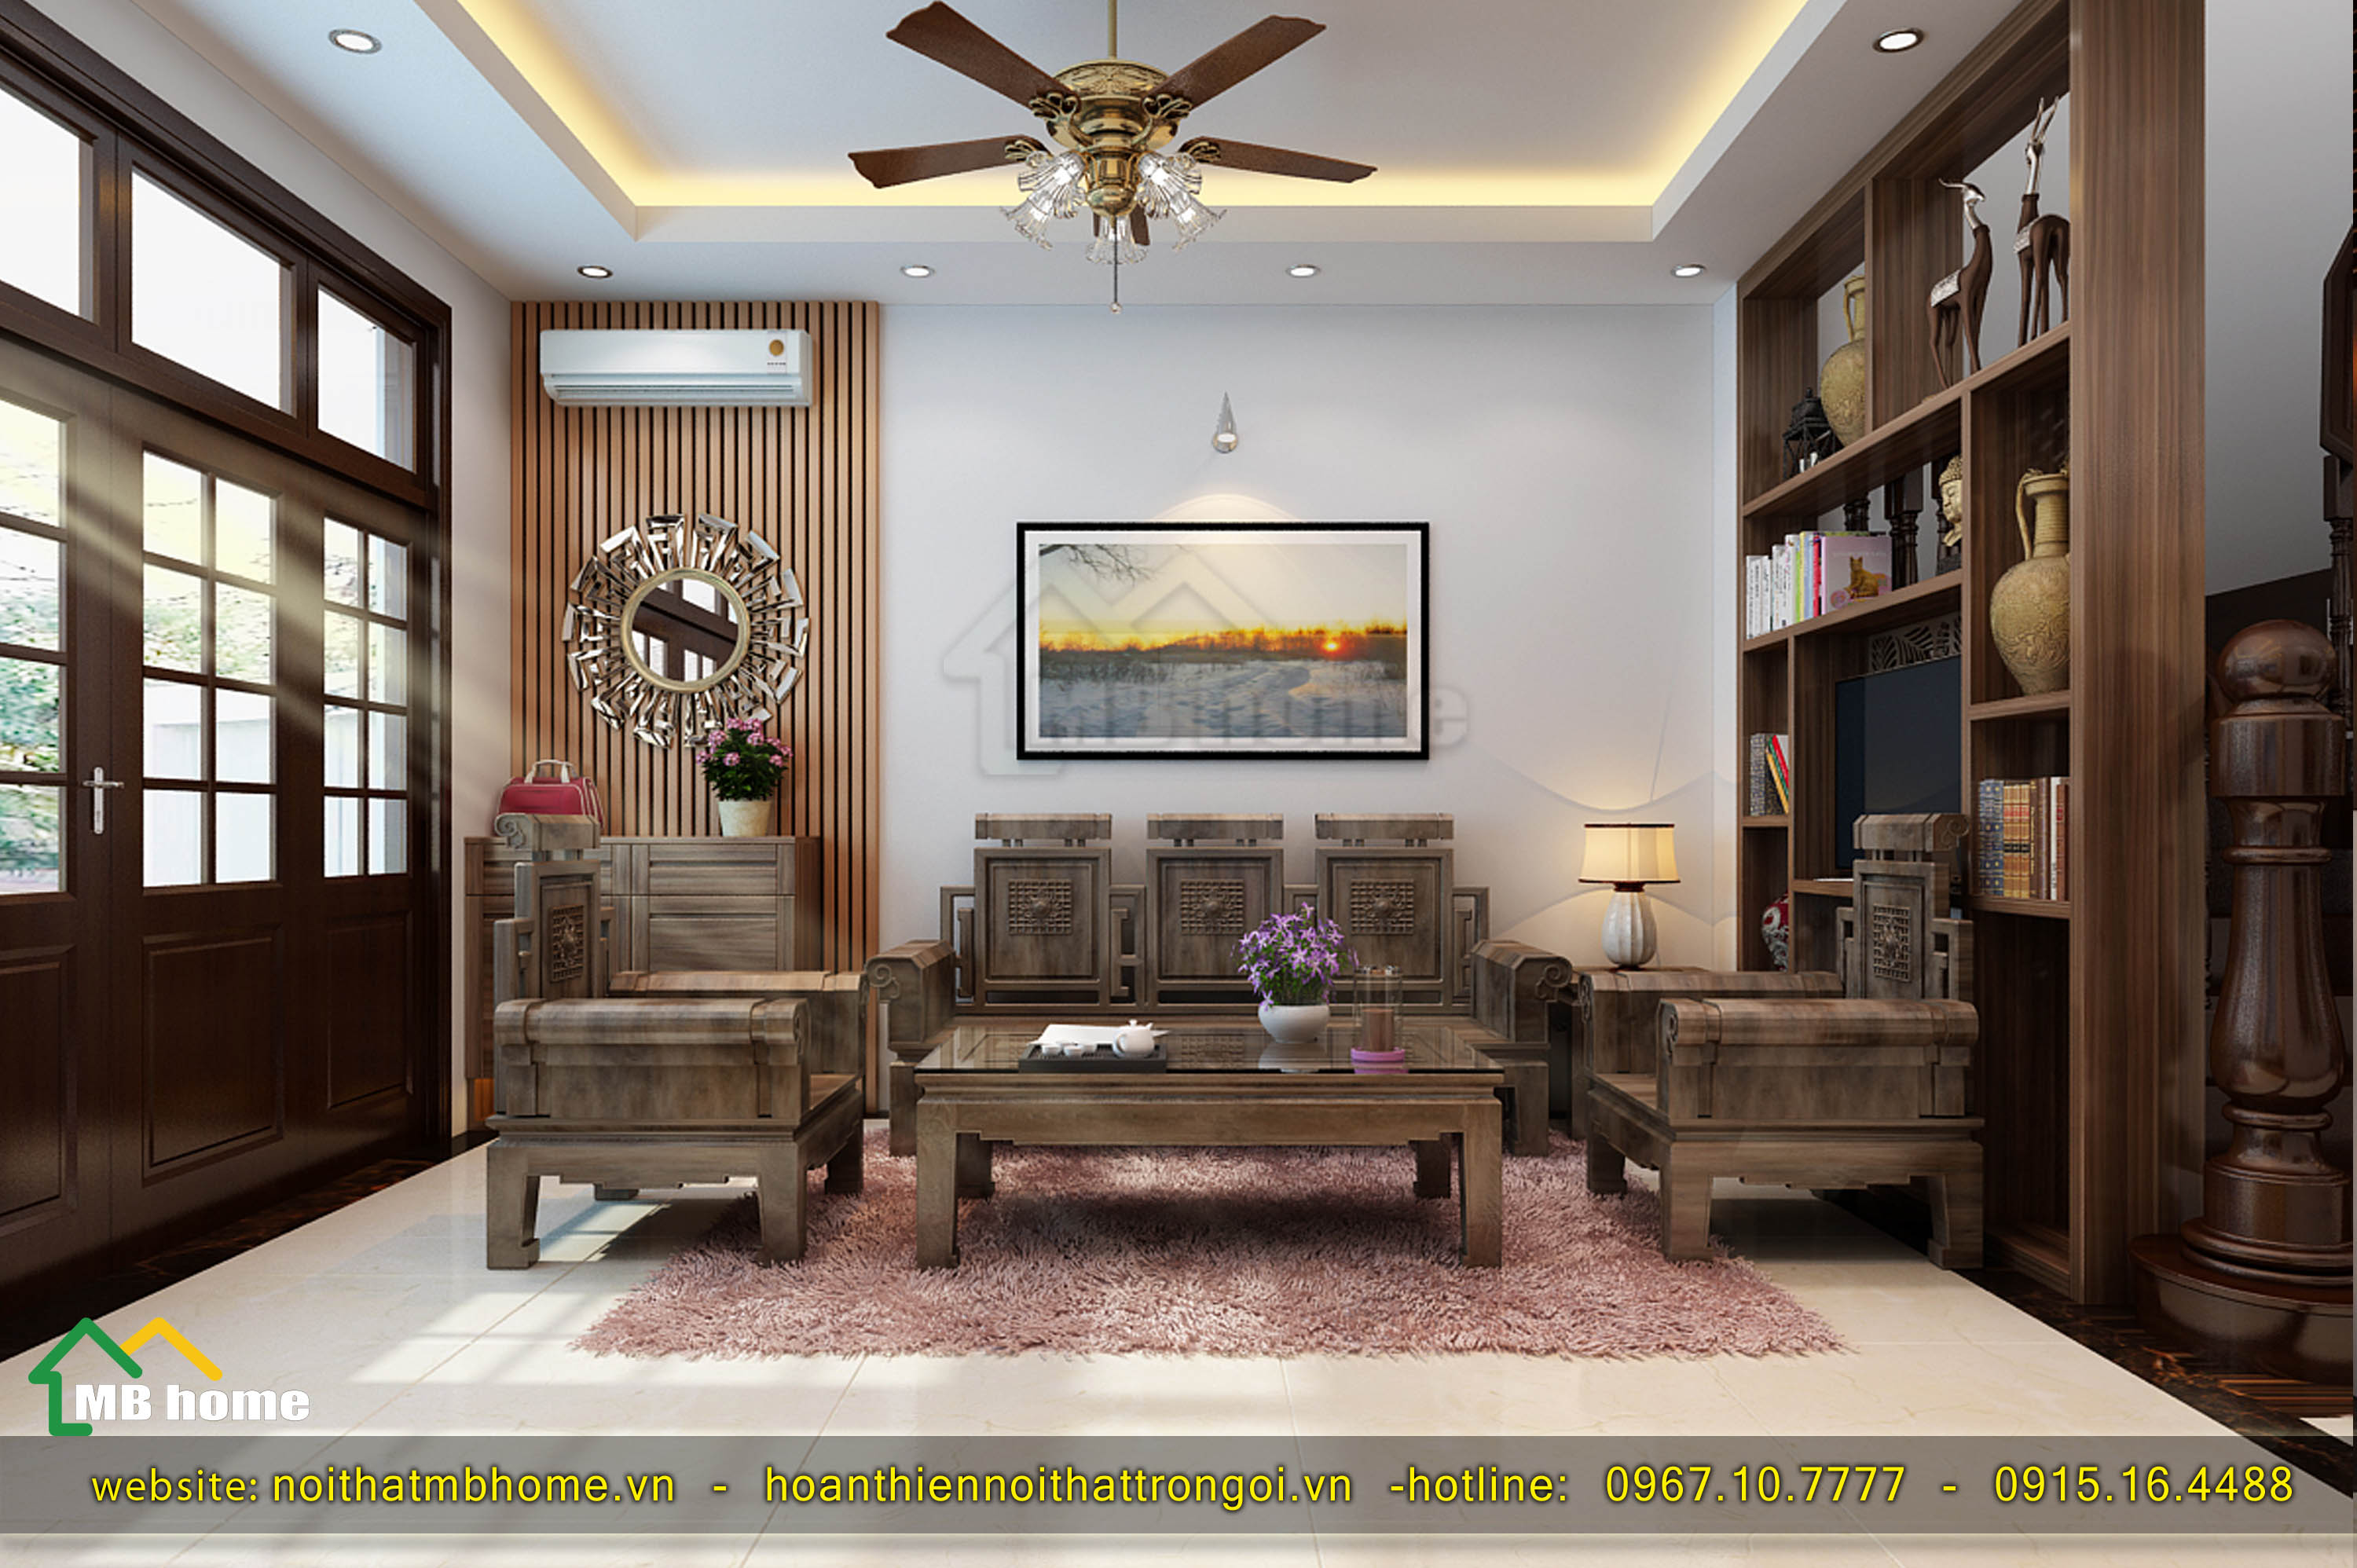 Thiết kế nội thất phòng khách và bếp bằng gỗ là một trong những xu hướng phong cách hiện đại hiện nay. Với thiết kế thông minh và tiện nghi, không gian sống của bạn sẽ trở nên hoàn hảo hơn bao giờ hết. Sự kết hợp giữa nội thất phòng khách và bếp giúp tạo nên một không gian sống tiện nghi, sang trọng và đầy tính thẩm mỹ. Hãy tận hưởng không gian sống hiện đại và đầy phong cách với thiết kế nội thất phòng khách và bếp bằng gỗ đầy ấn tượng.